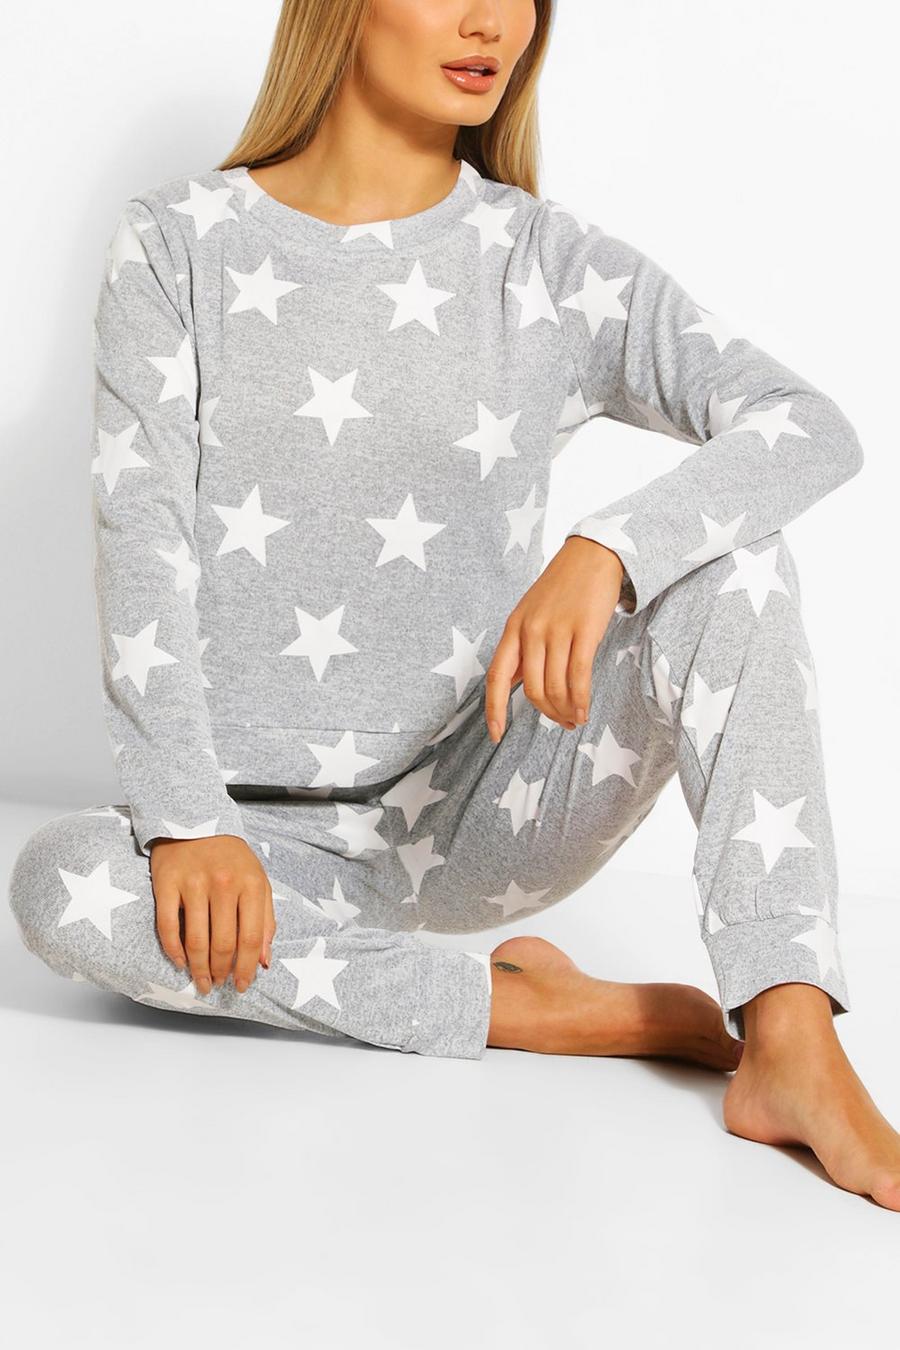 Sweatshirt und Jogginghose mit Sternen-Print, Grau grey